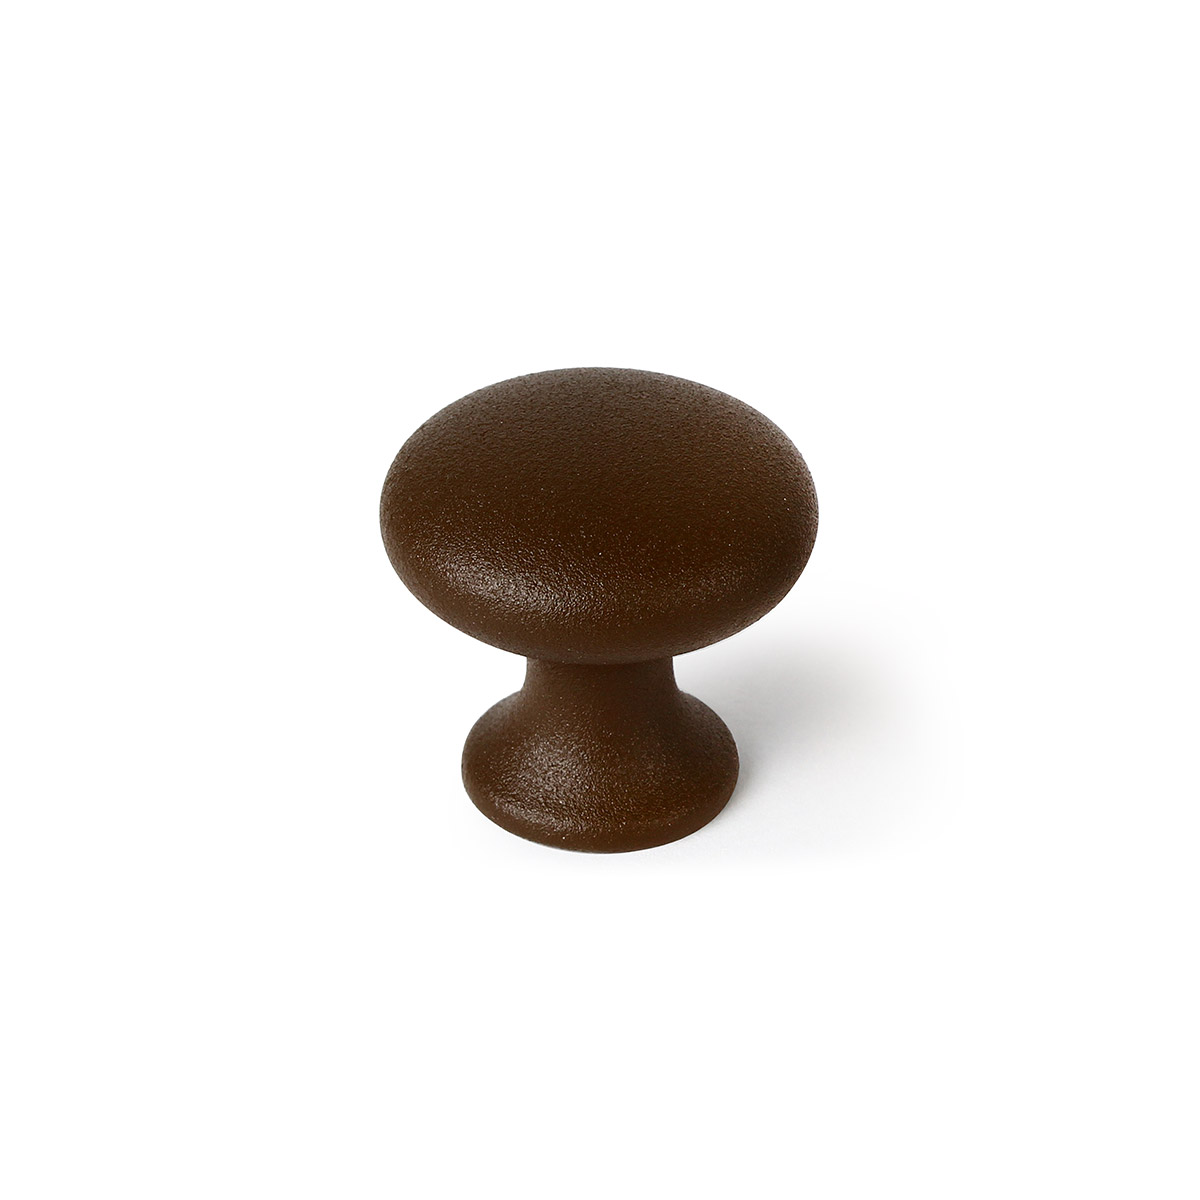 Blister avec 6 boutons de zamak avec une finition brune, dimensions: 30x30x30mm et ø: 30mm